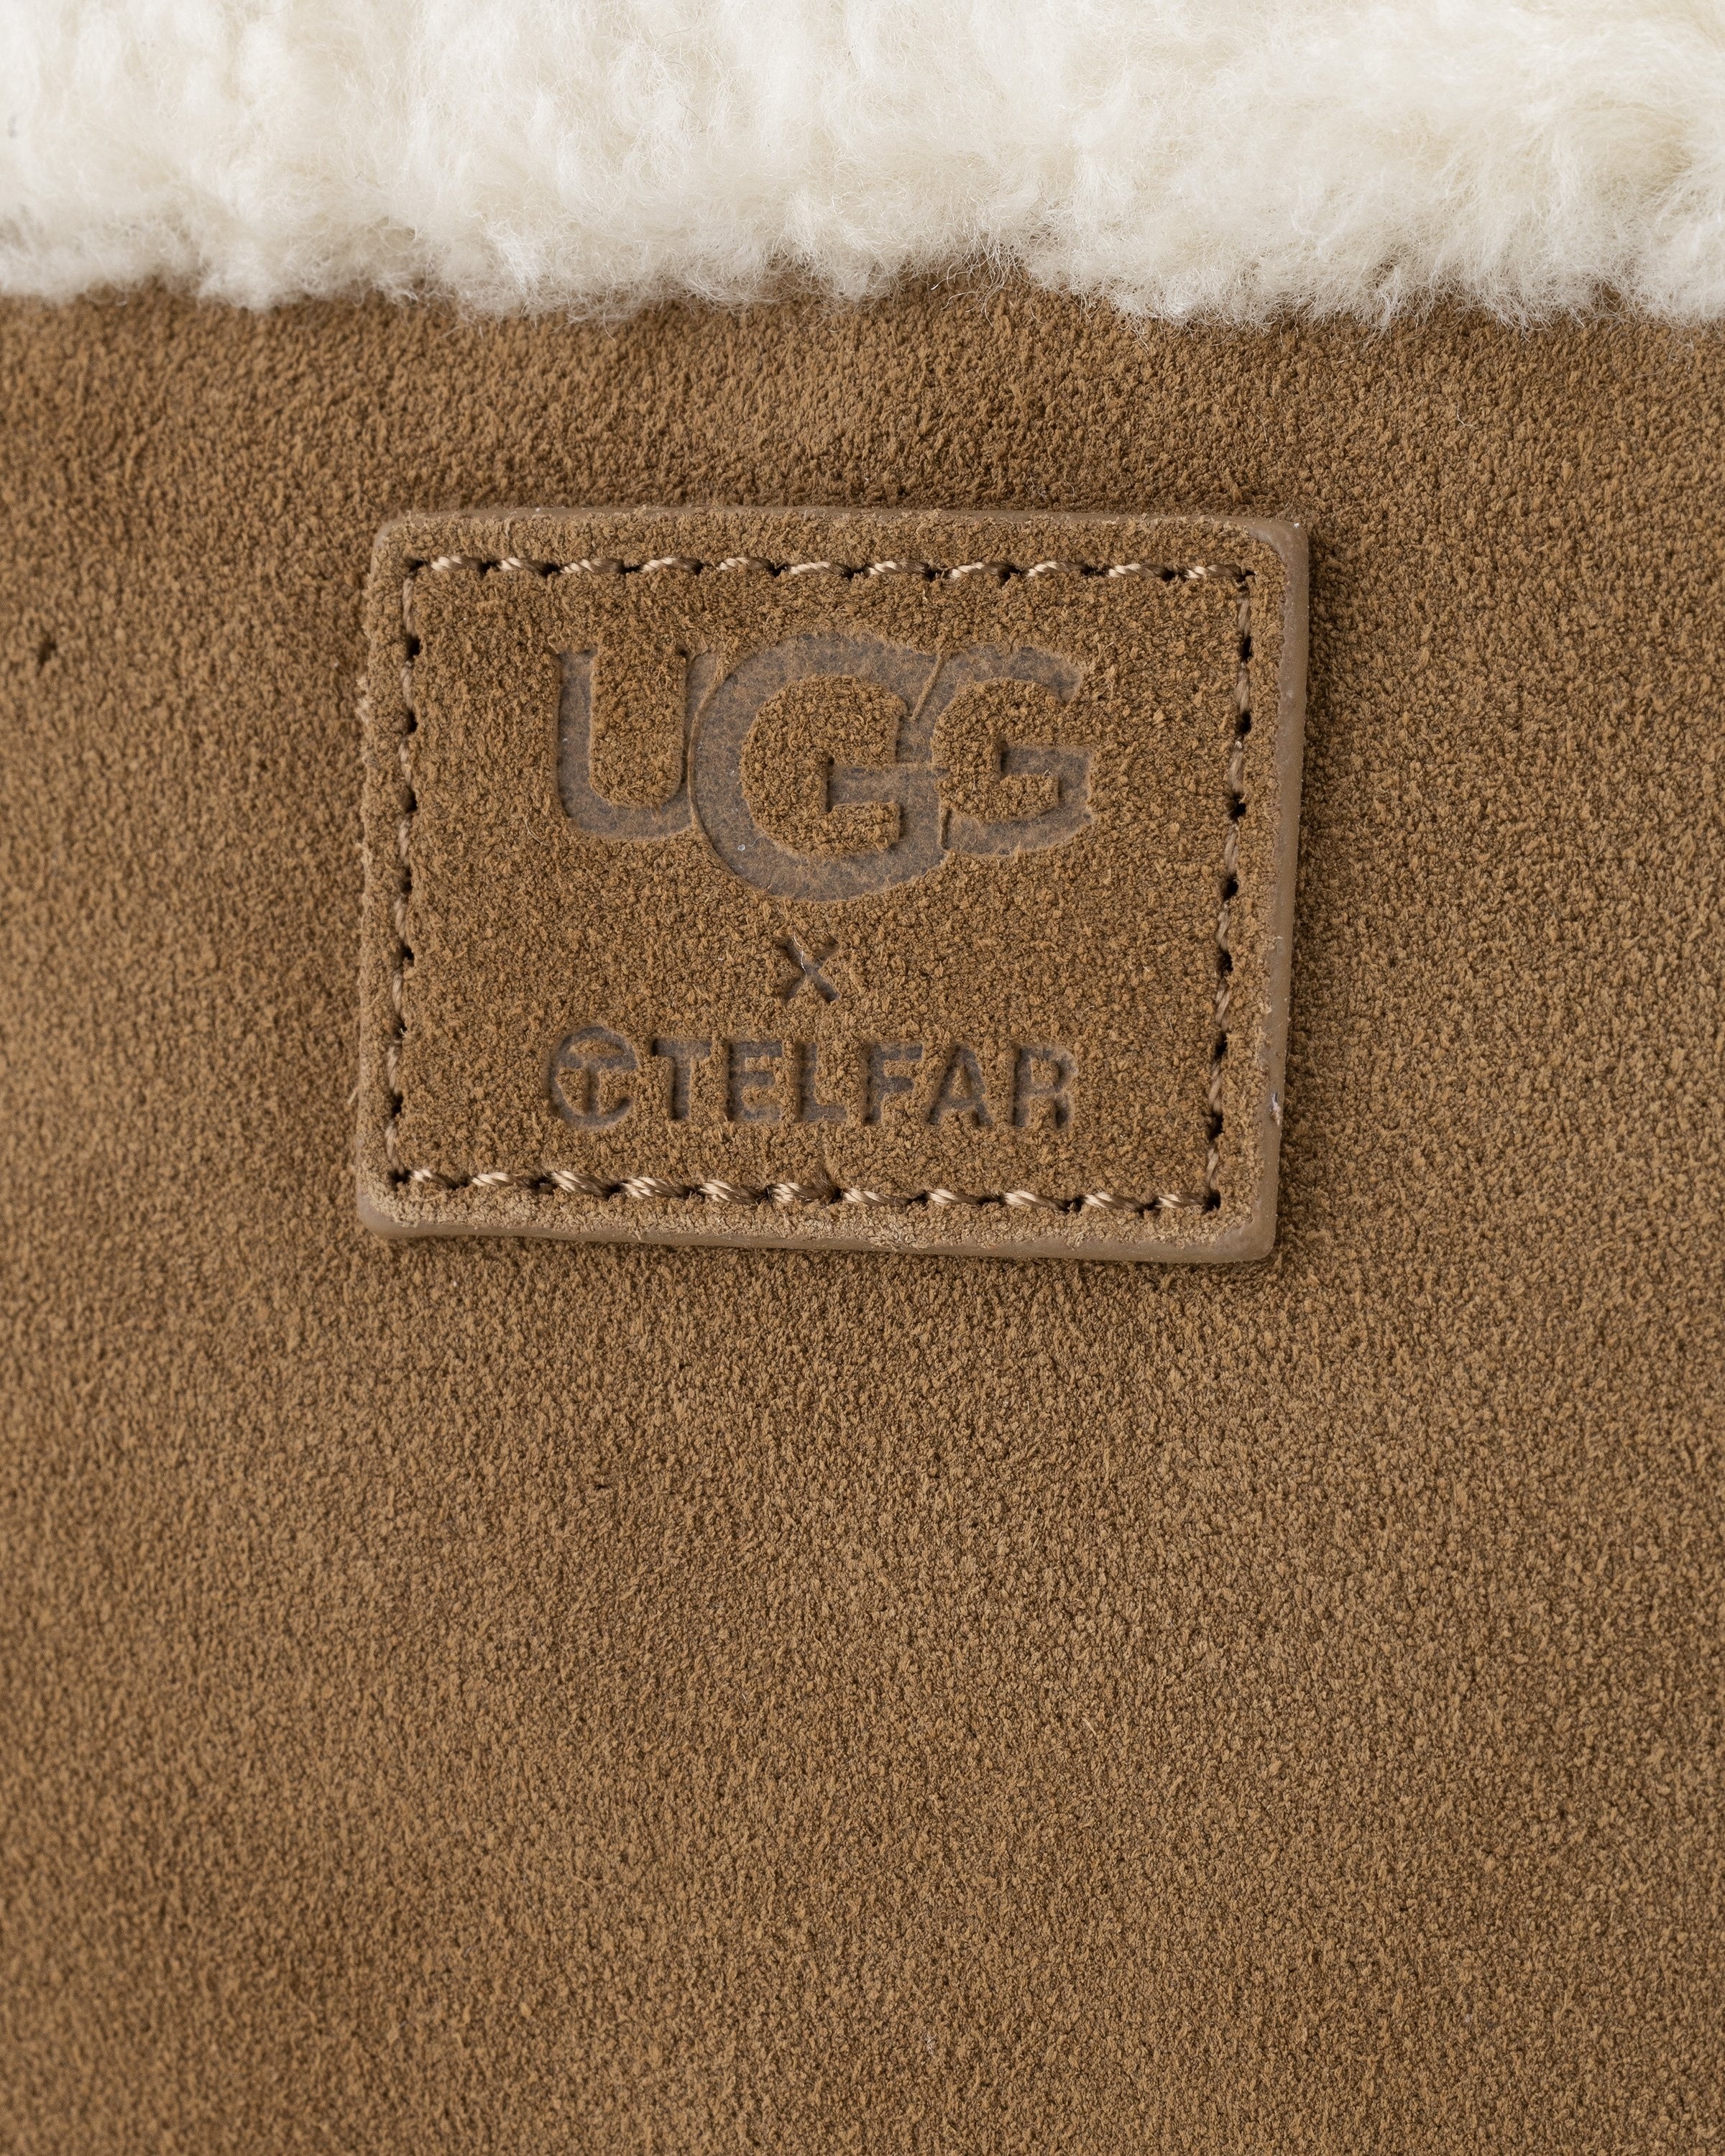 UGG x Telfar Logo Mini Chestnut - 1122991-CHE - US